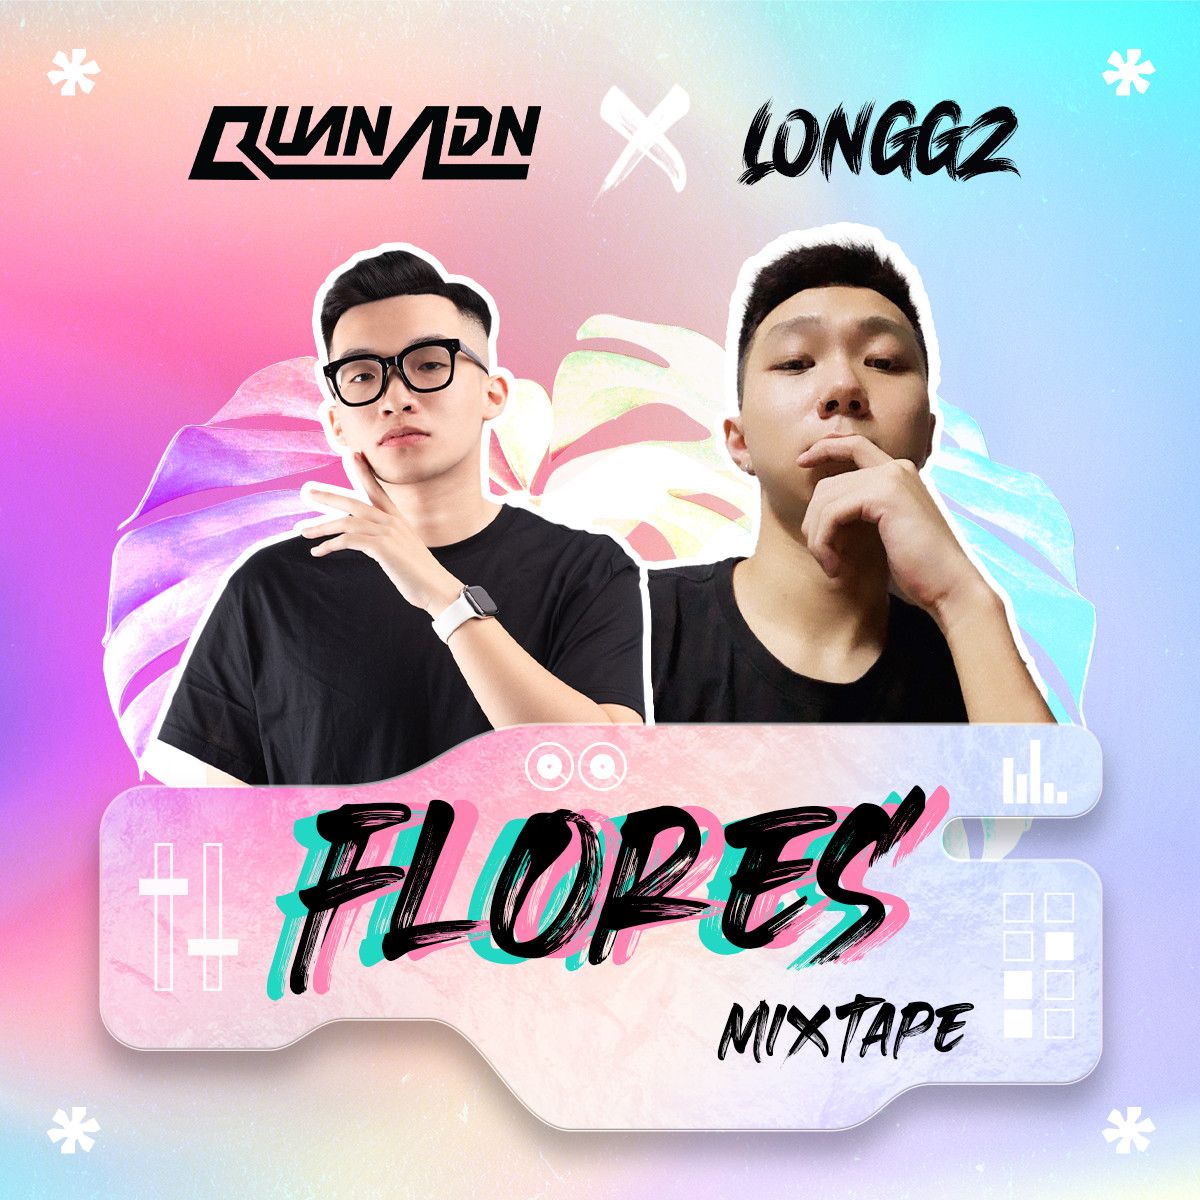 डाउनलोड Mixtape - Flores by Quan ADN & LONGGZ